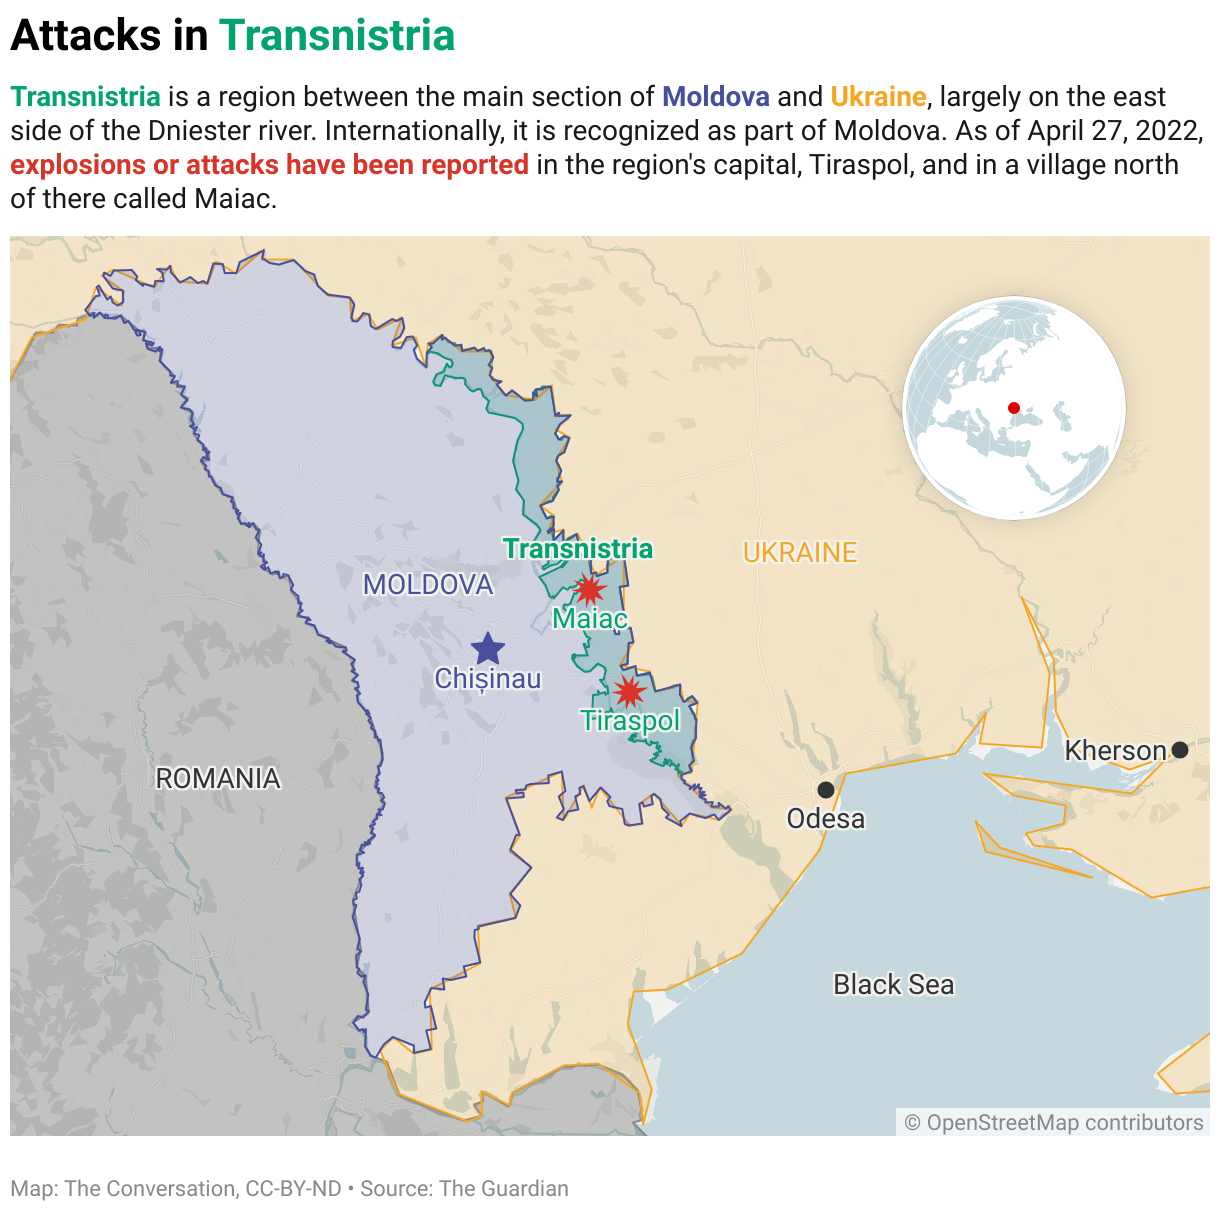 Moldova and Transnistria